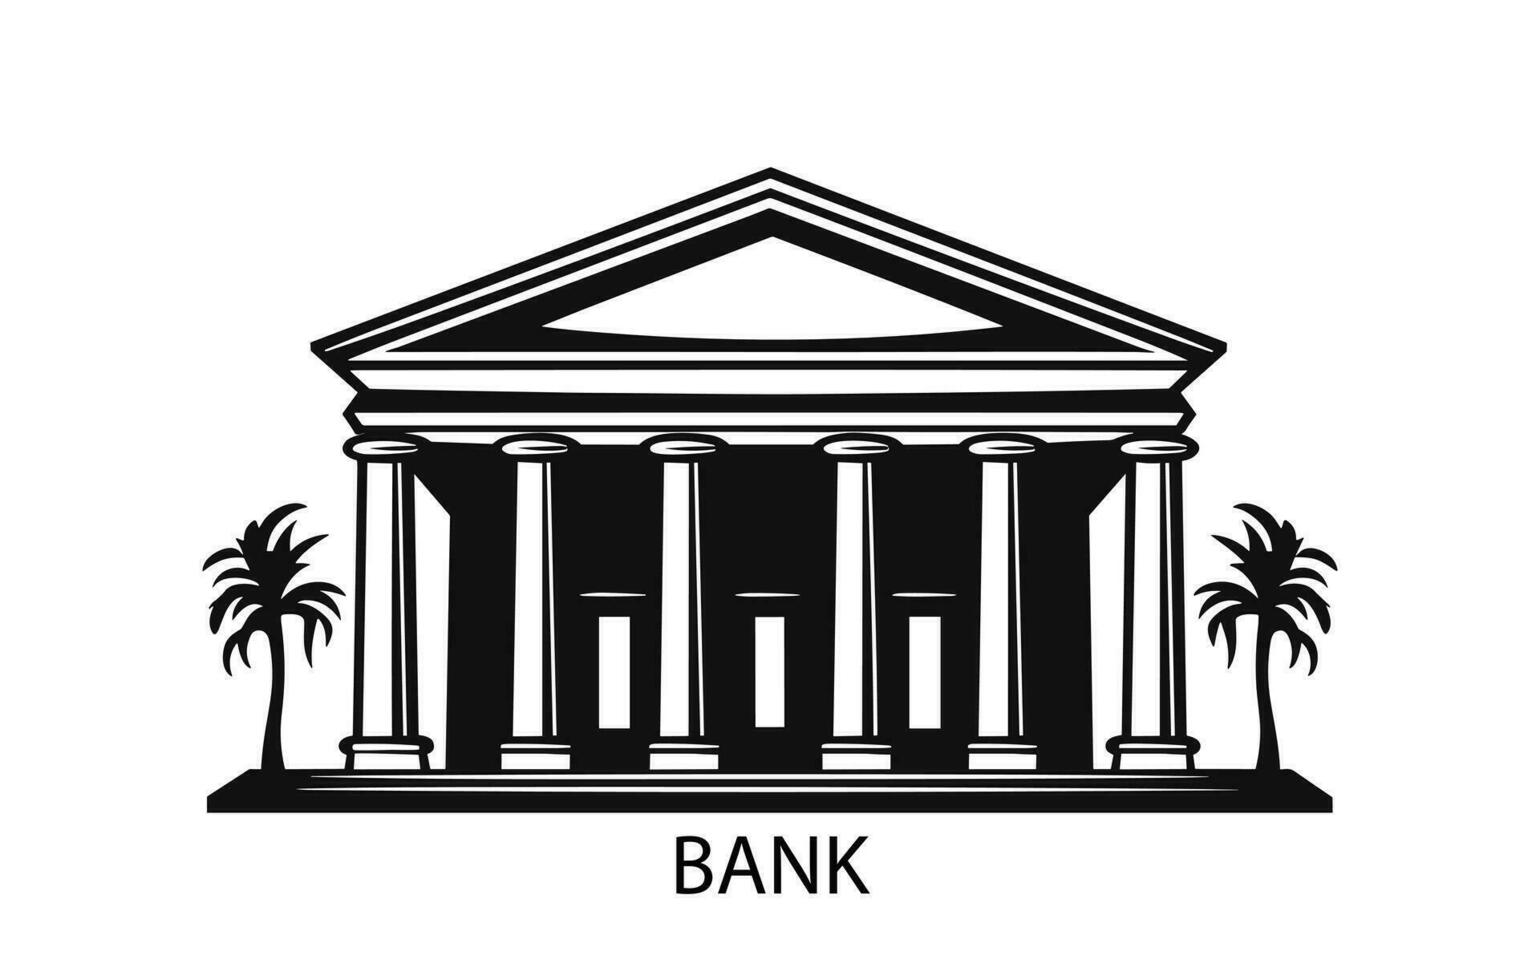 Bank byggnad isolerat på vit bakgrund, vektor platt illustration